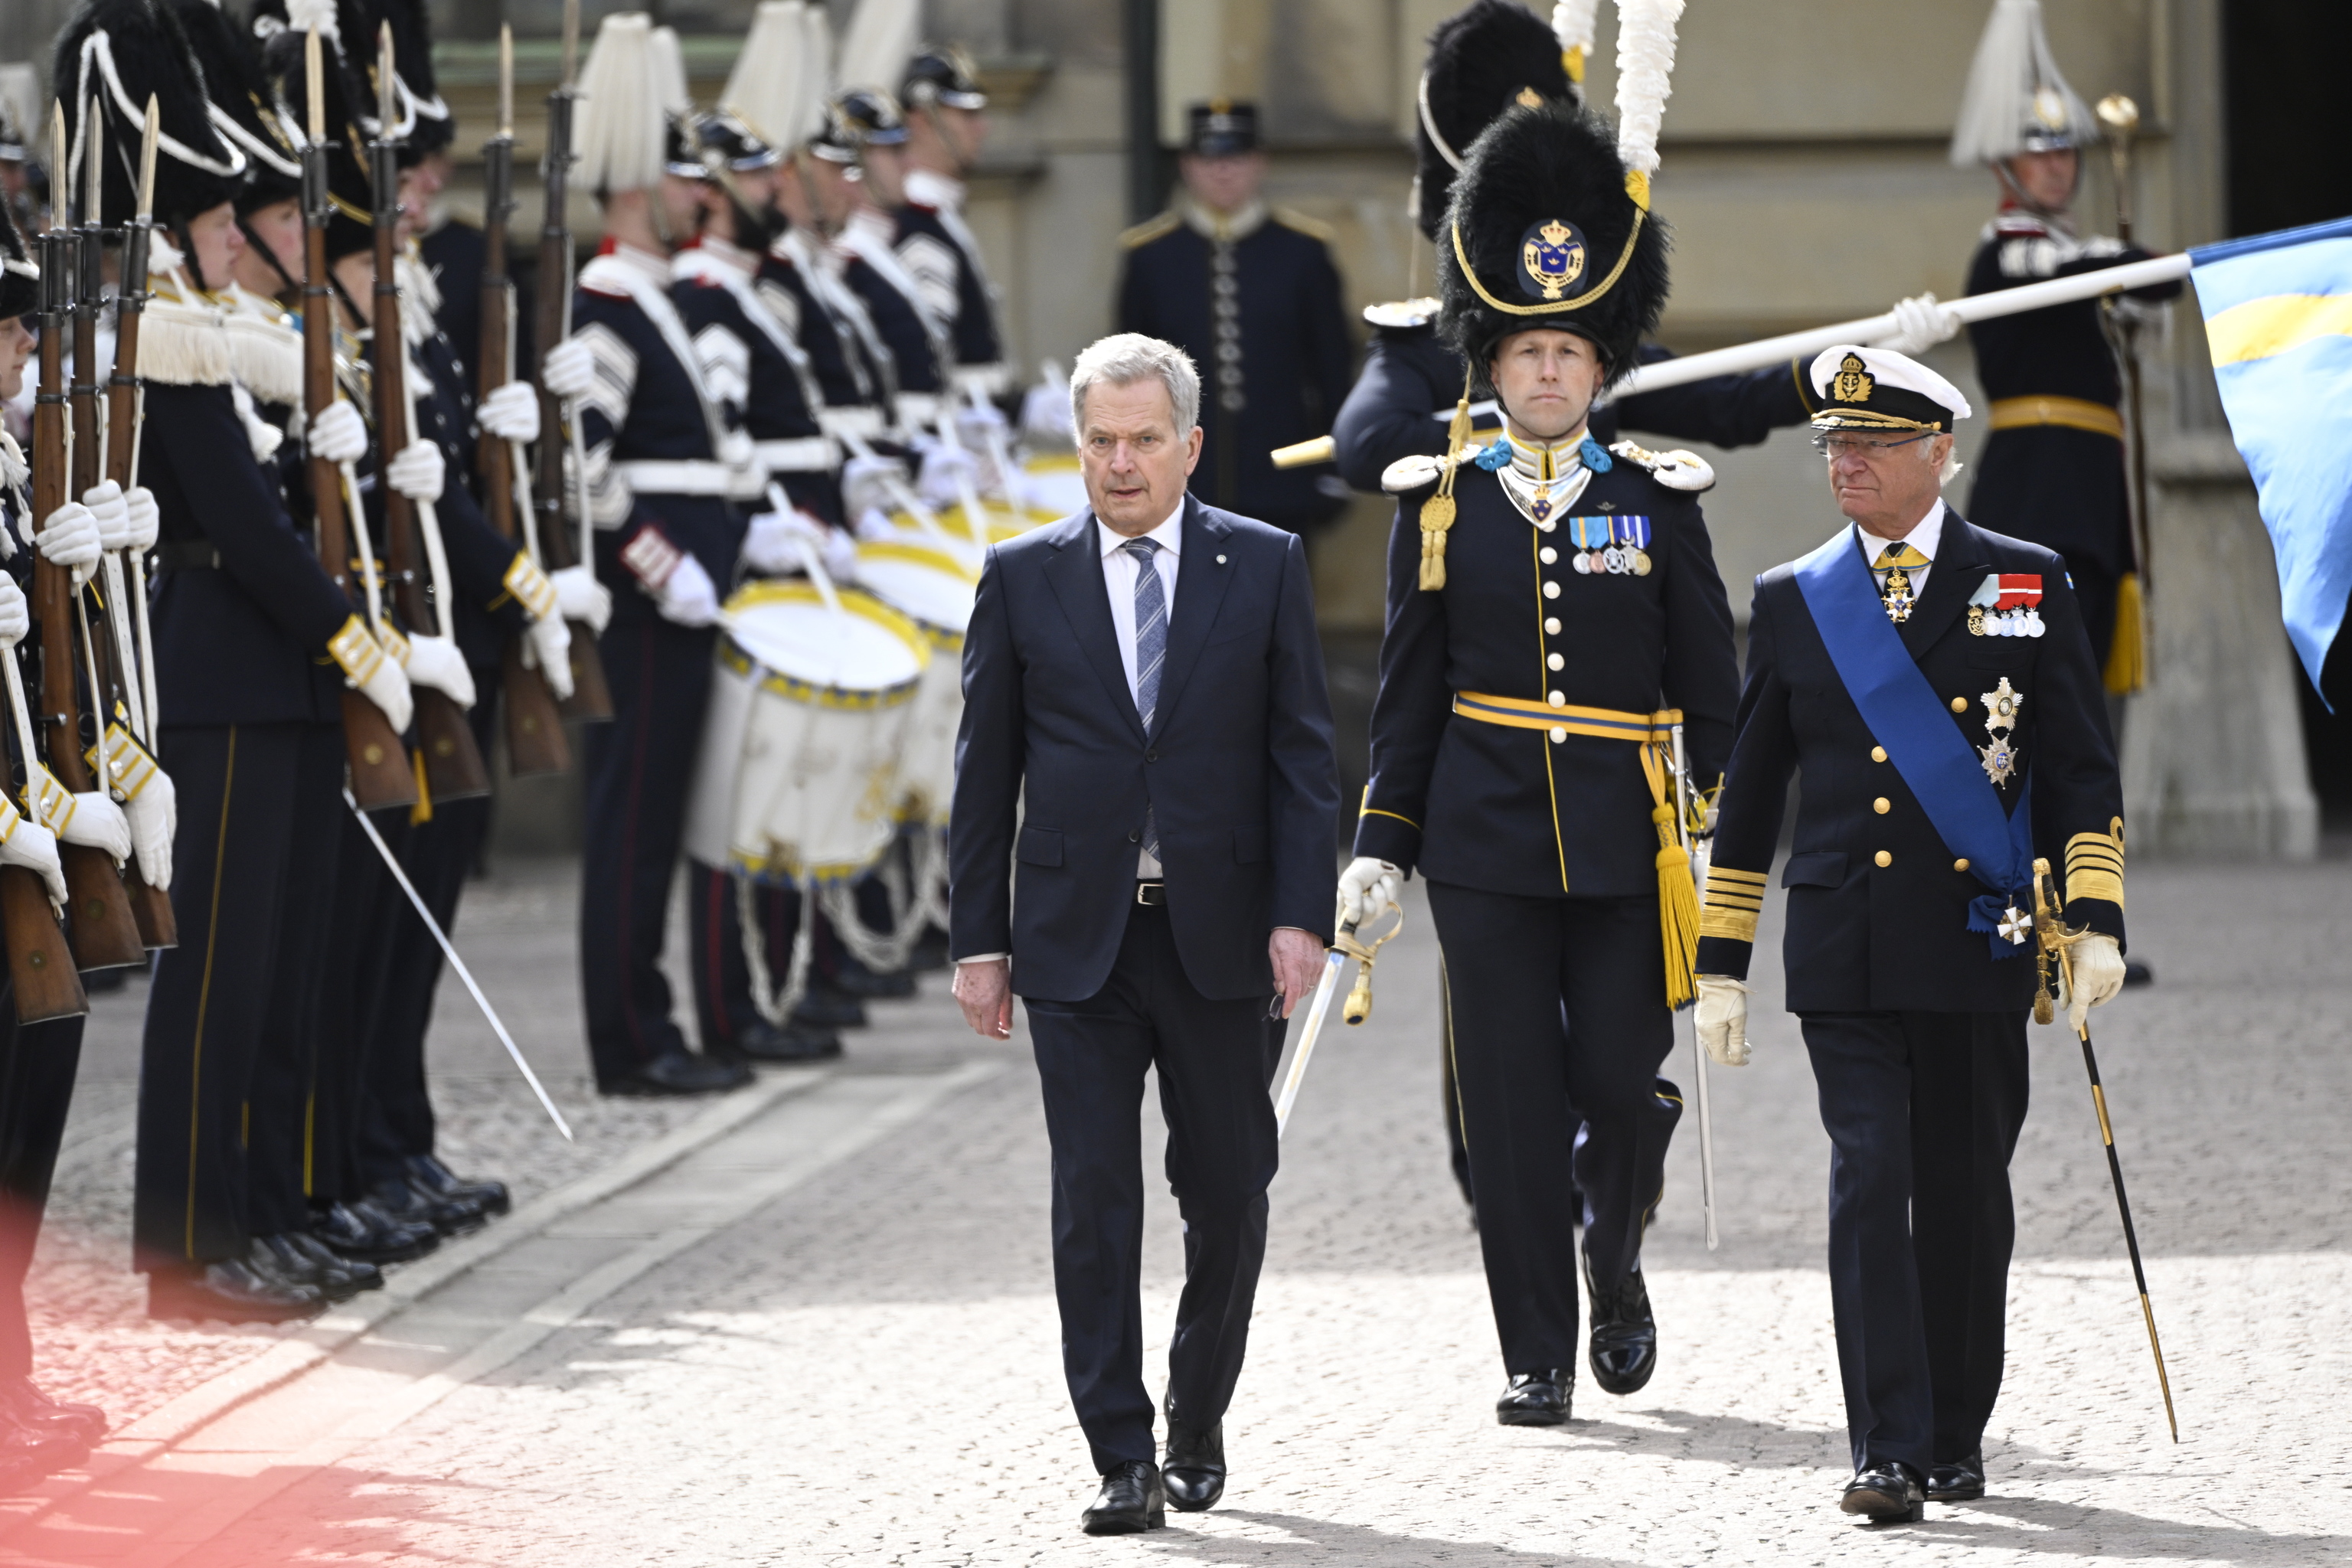 El presidente finlandés, Sauli Niinisto (izq.), y el rey sueco, Carl Gustaf, durante una ceremonia en el palacio real de Estocolmo.